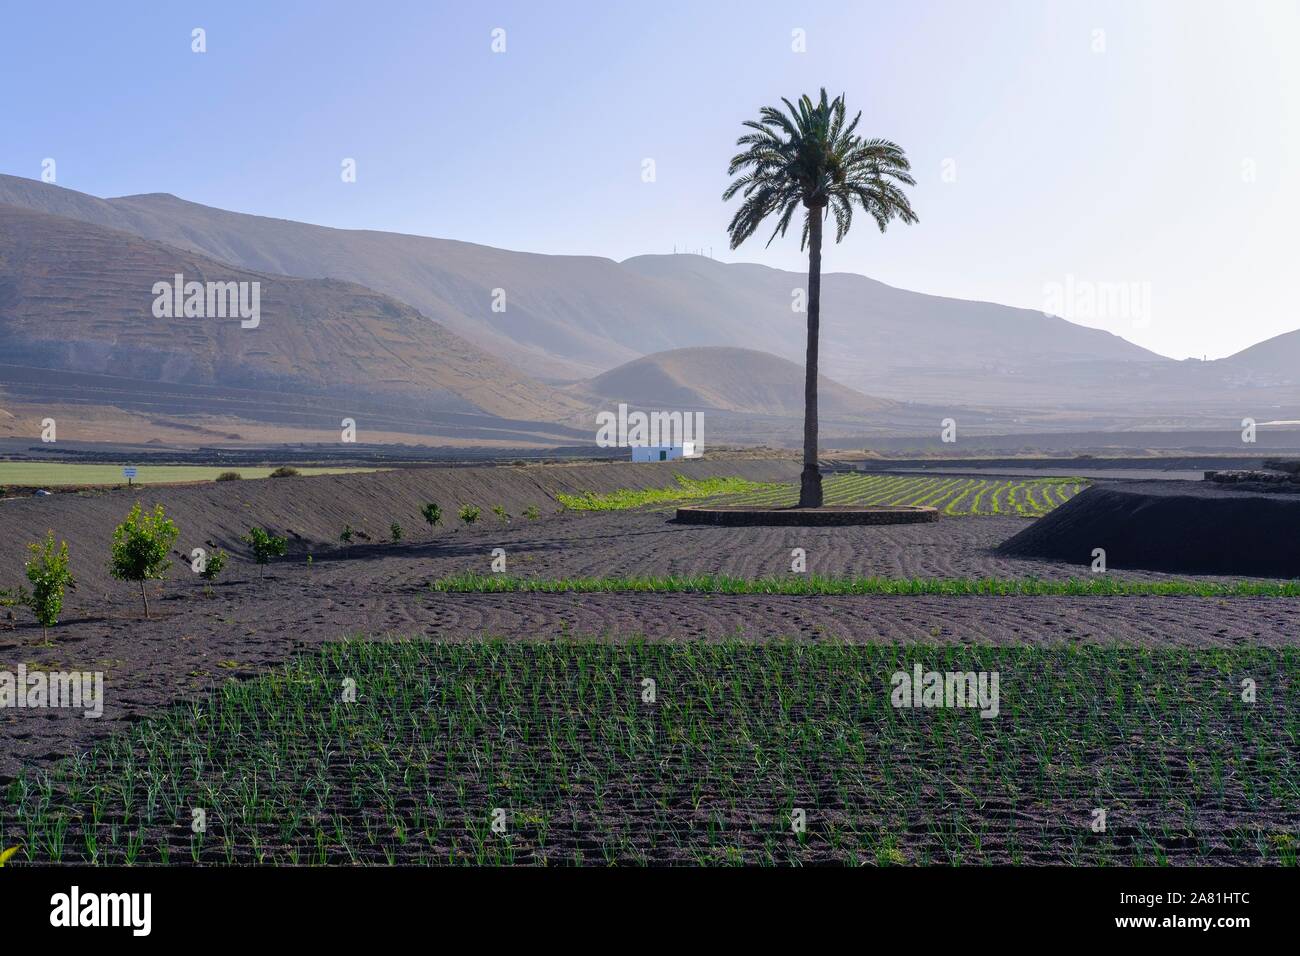 Palm in fields, Valle de la Degollada, near Yaiza, Lanzarote, Canary Islands, Spain Stock Photo